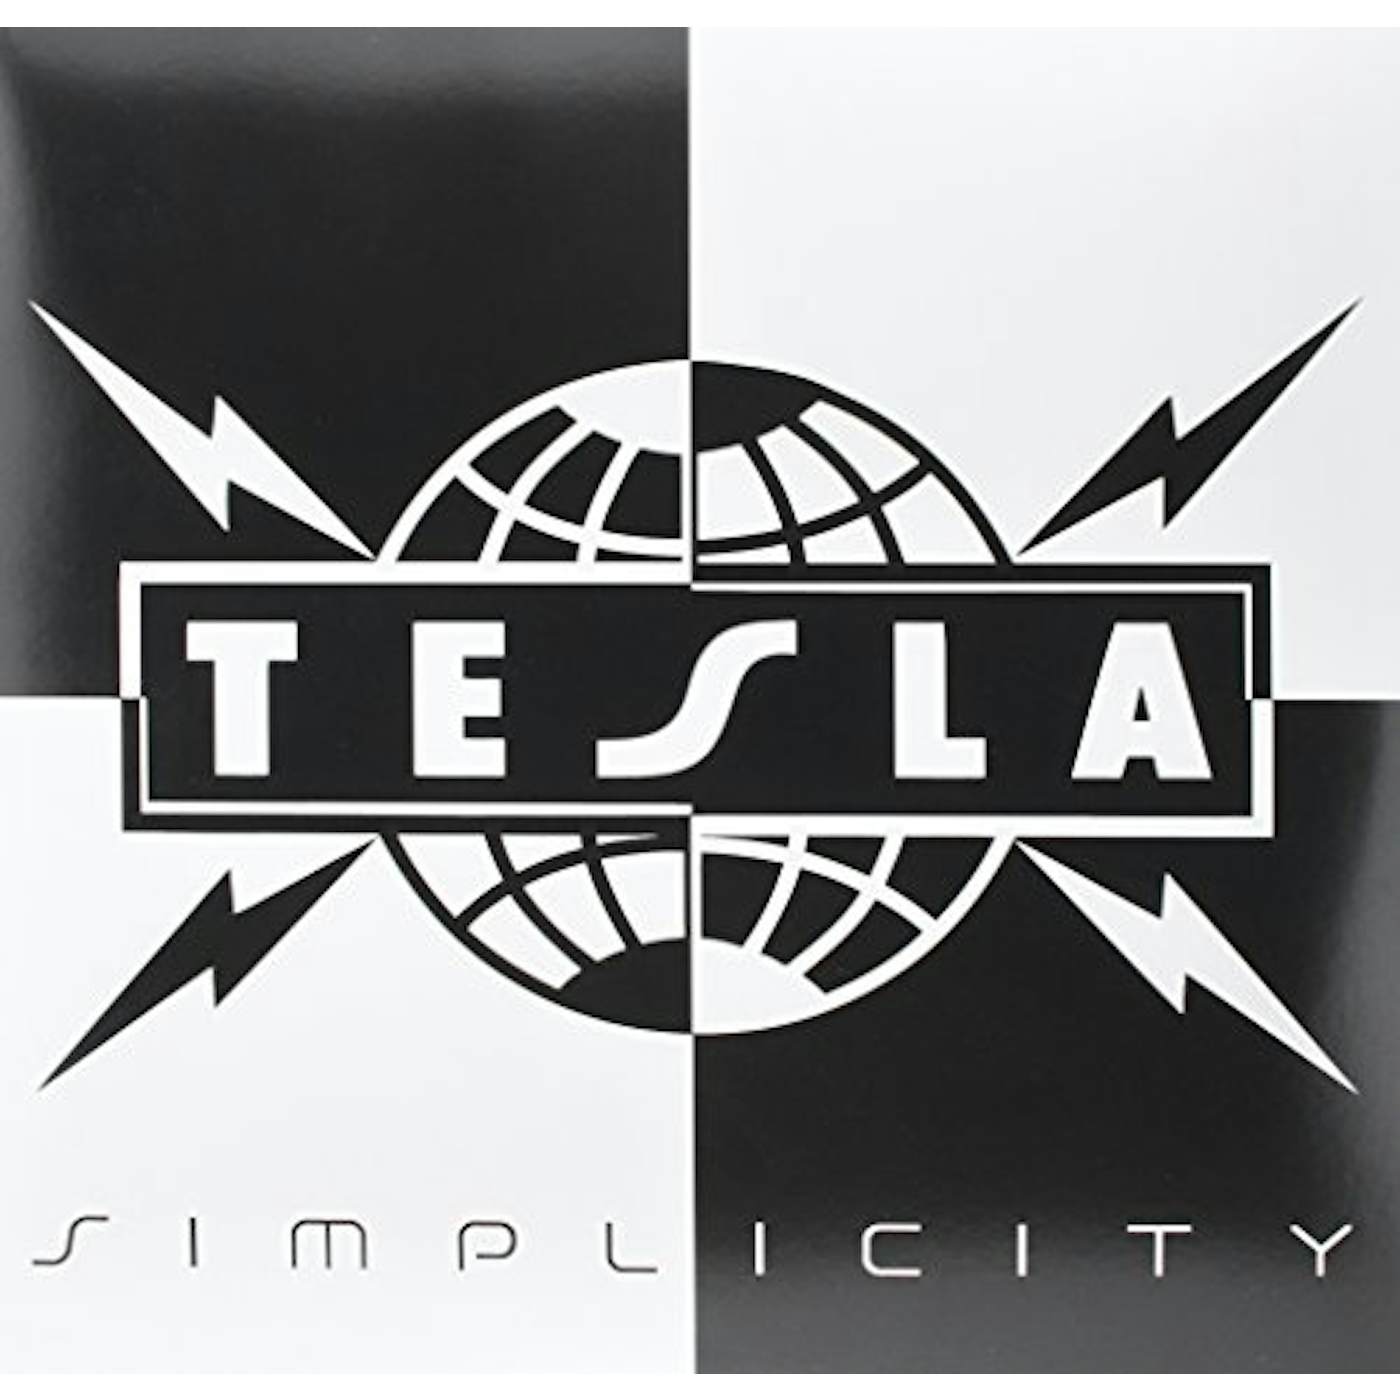 Tesla Simplicity Vinyl Record